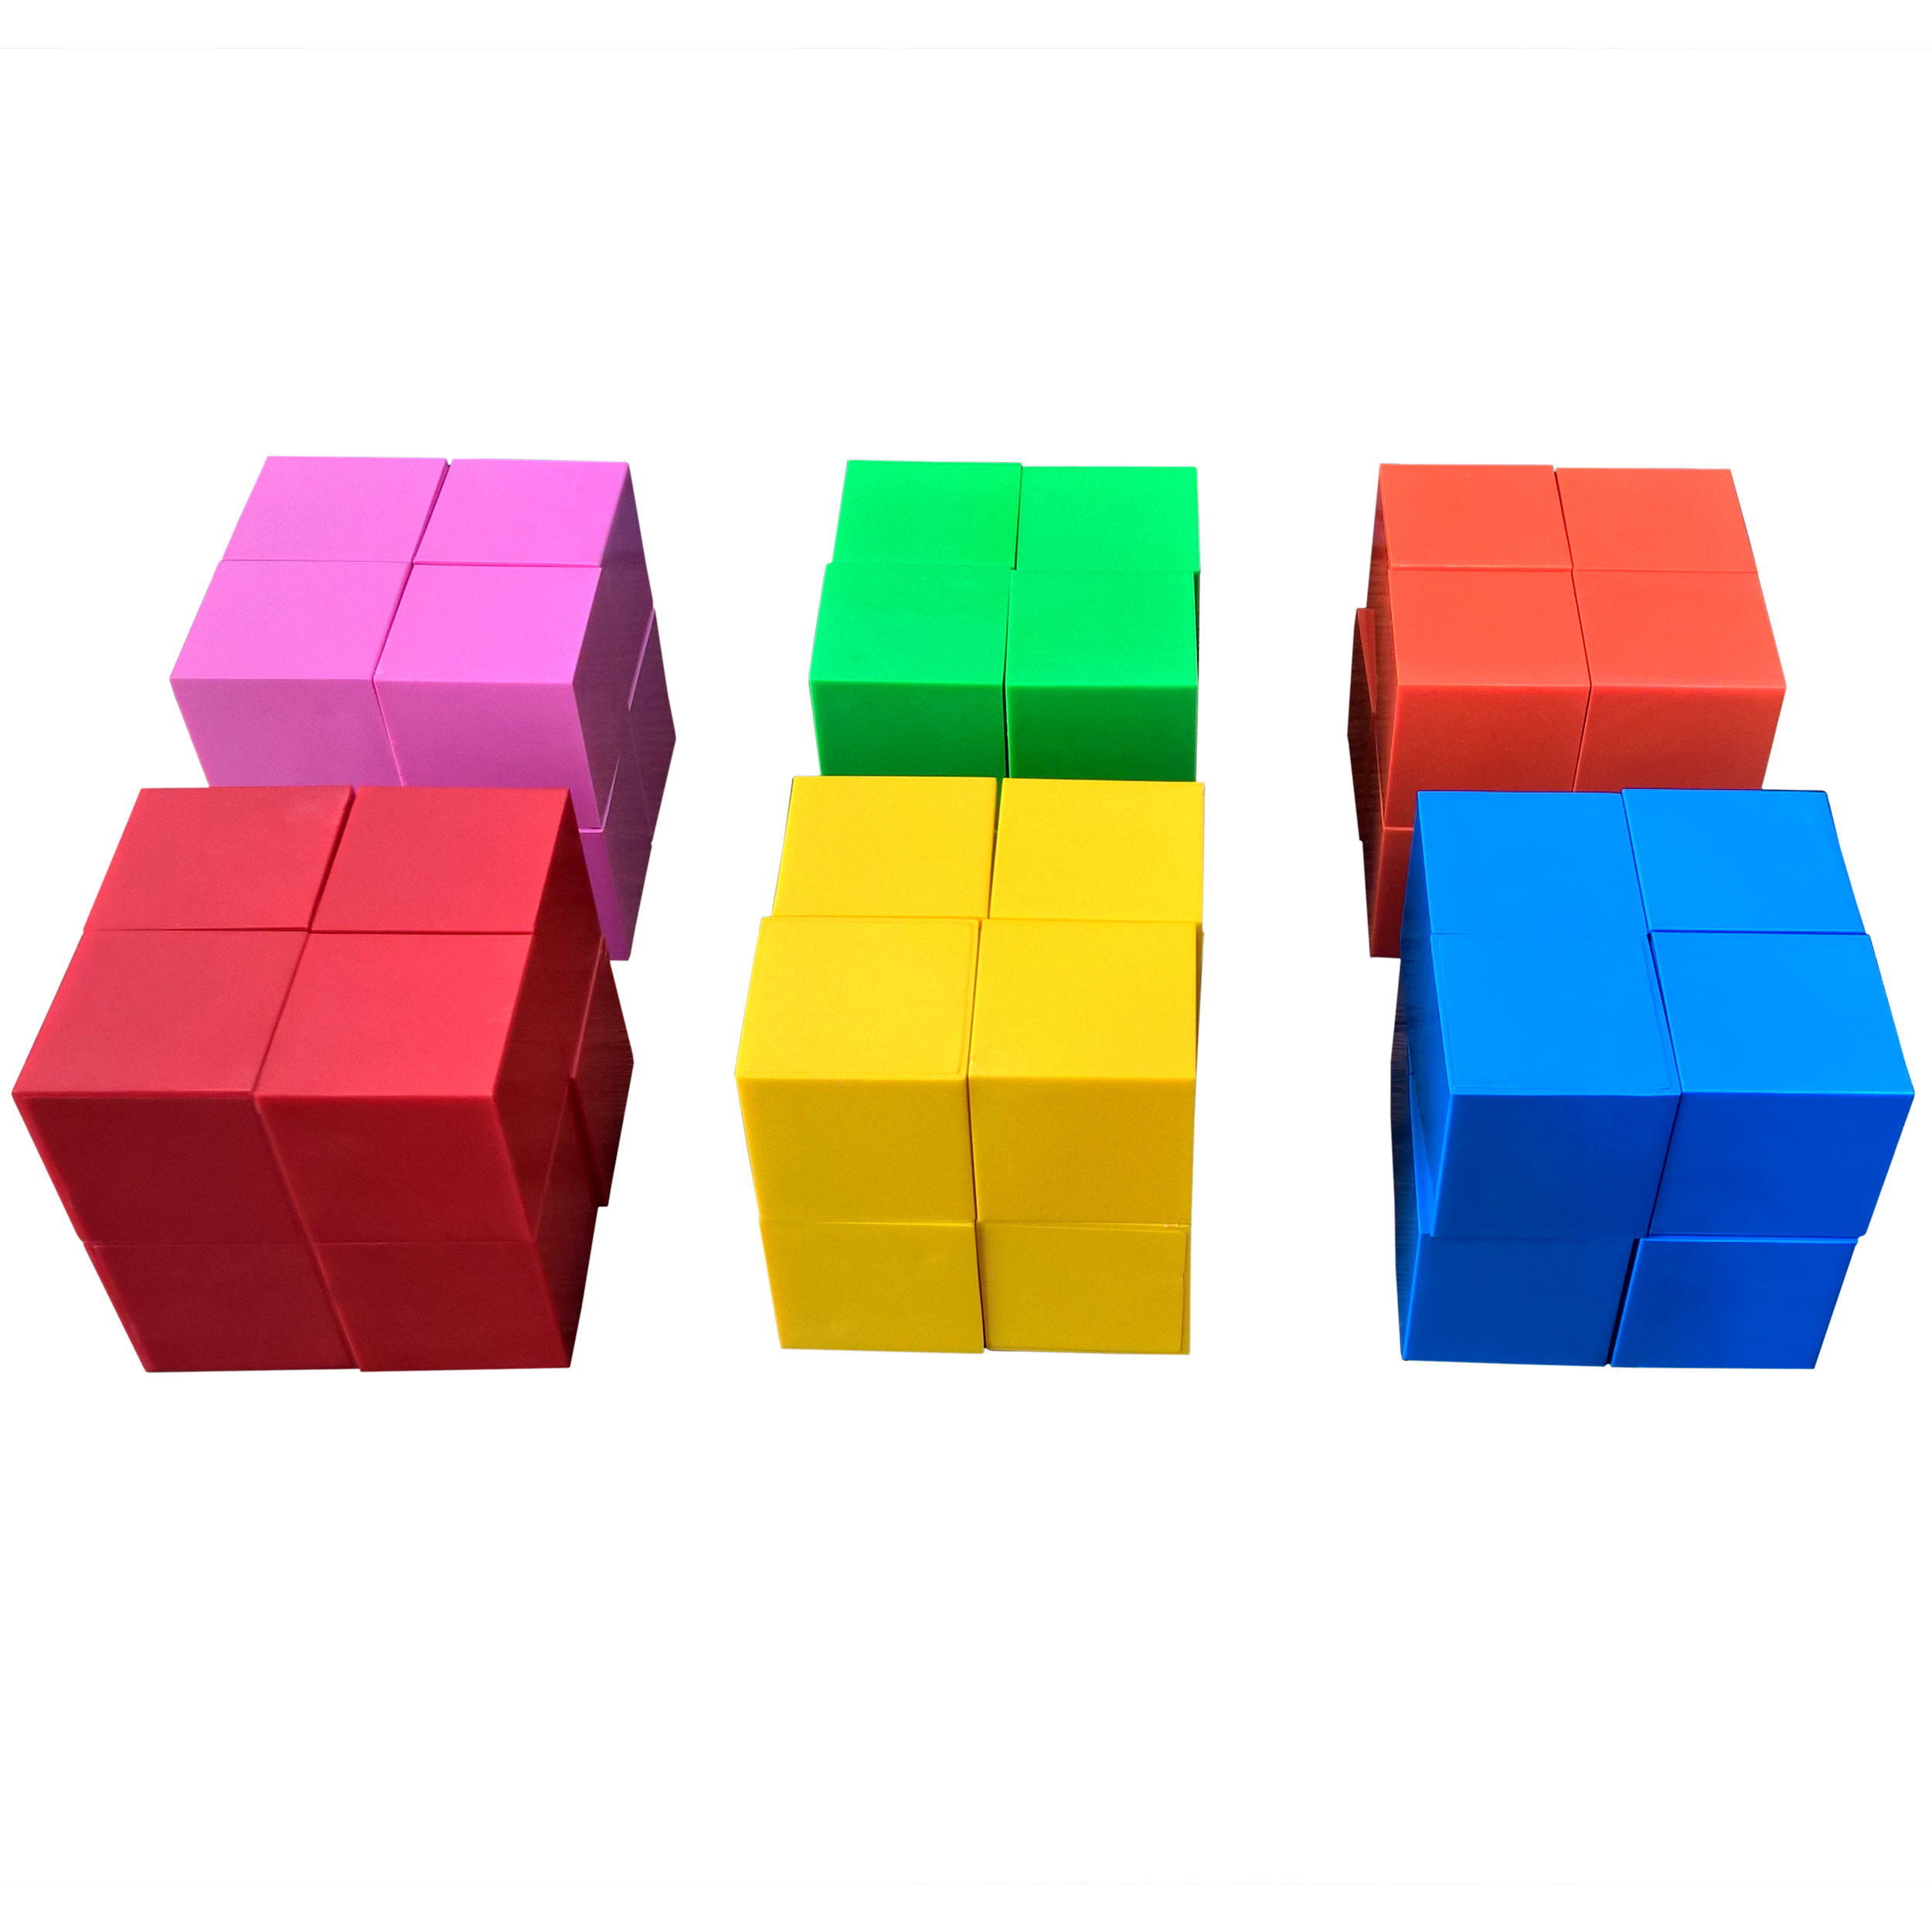 بازی آموزشی مکعب های رنگی دانشمند مدل A48